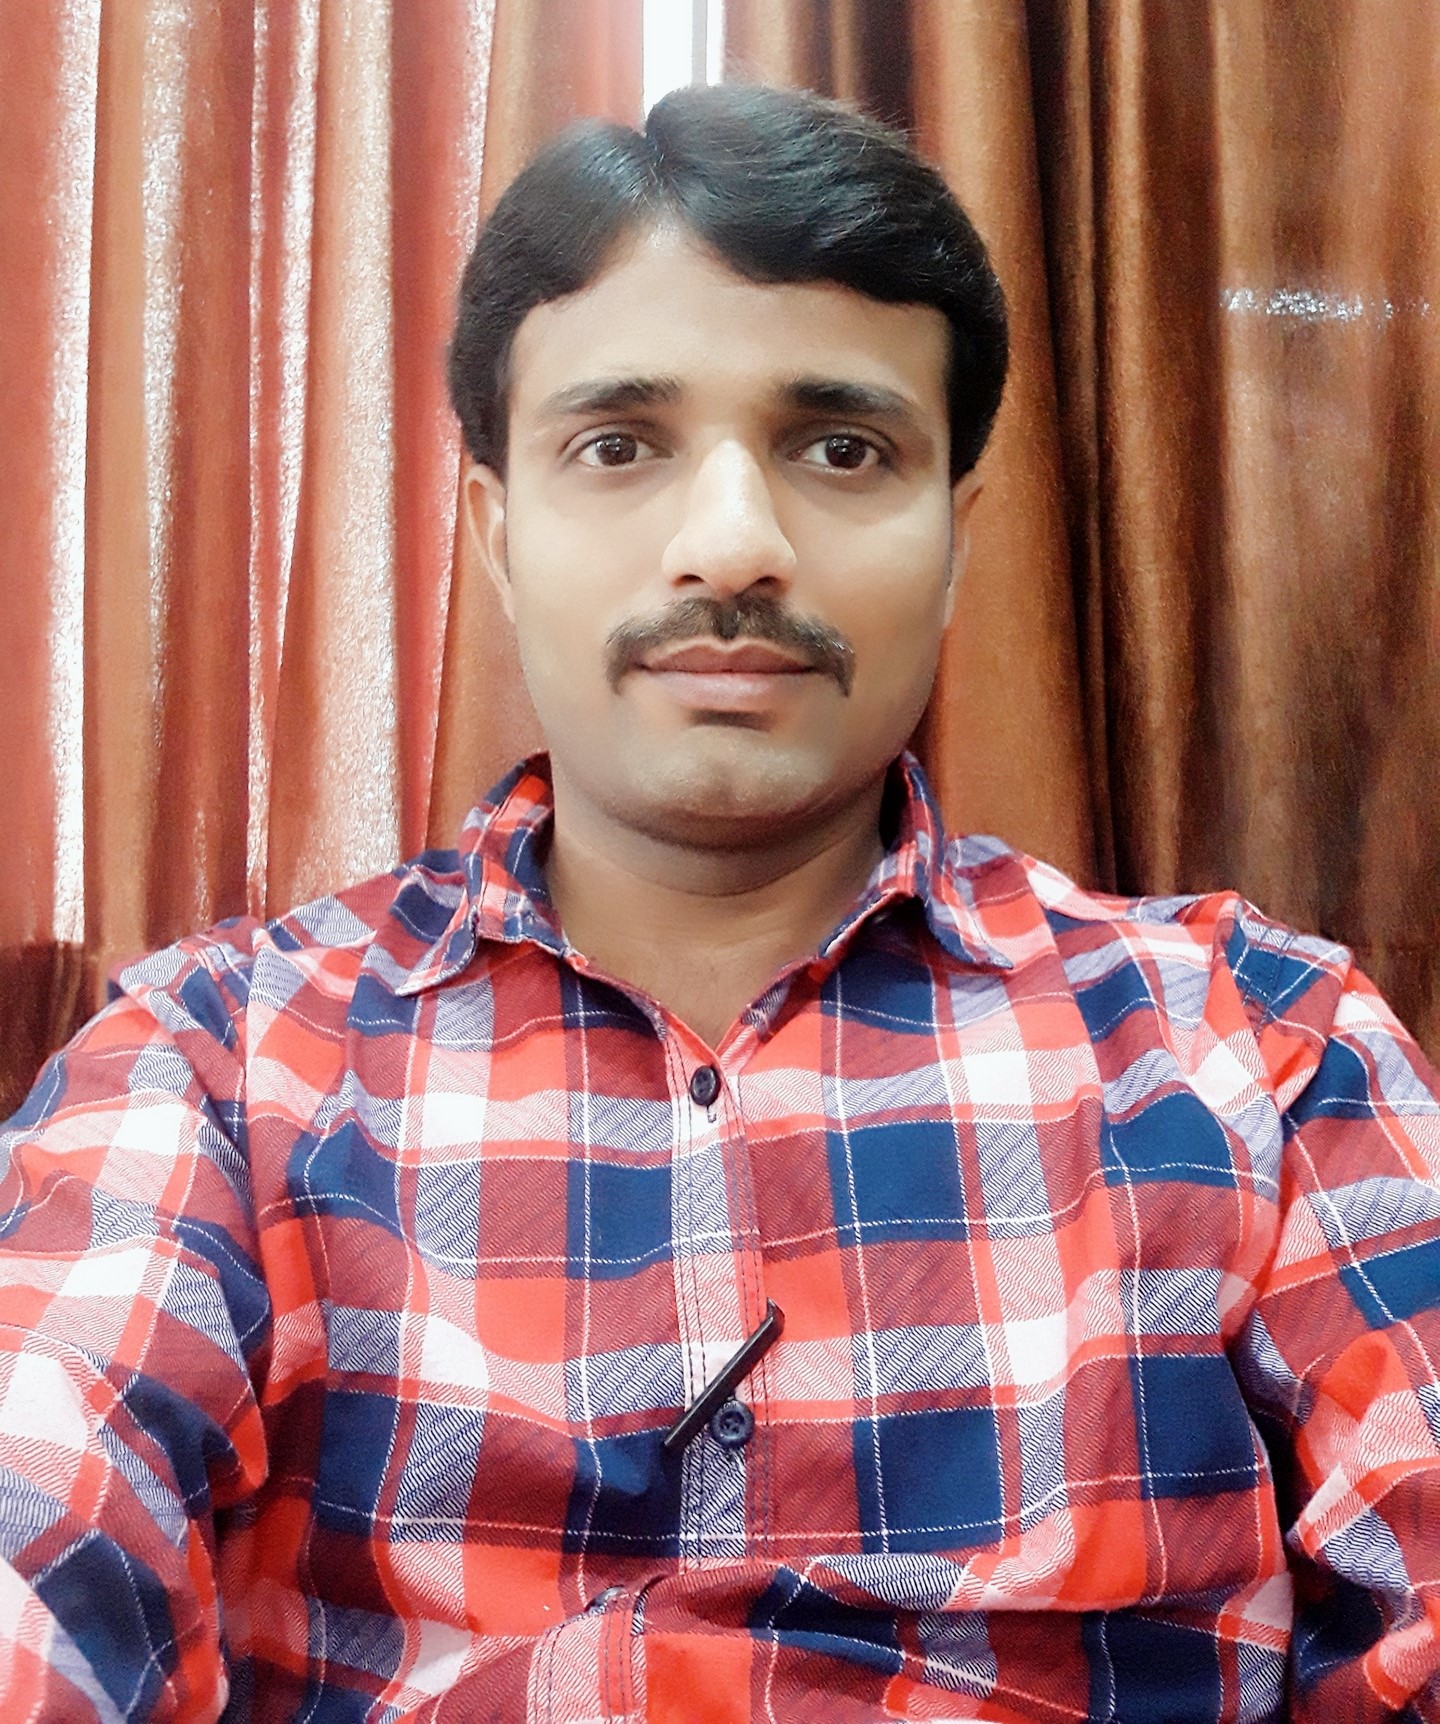 Mr. Prashant M. Tilavat